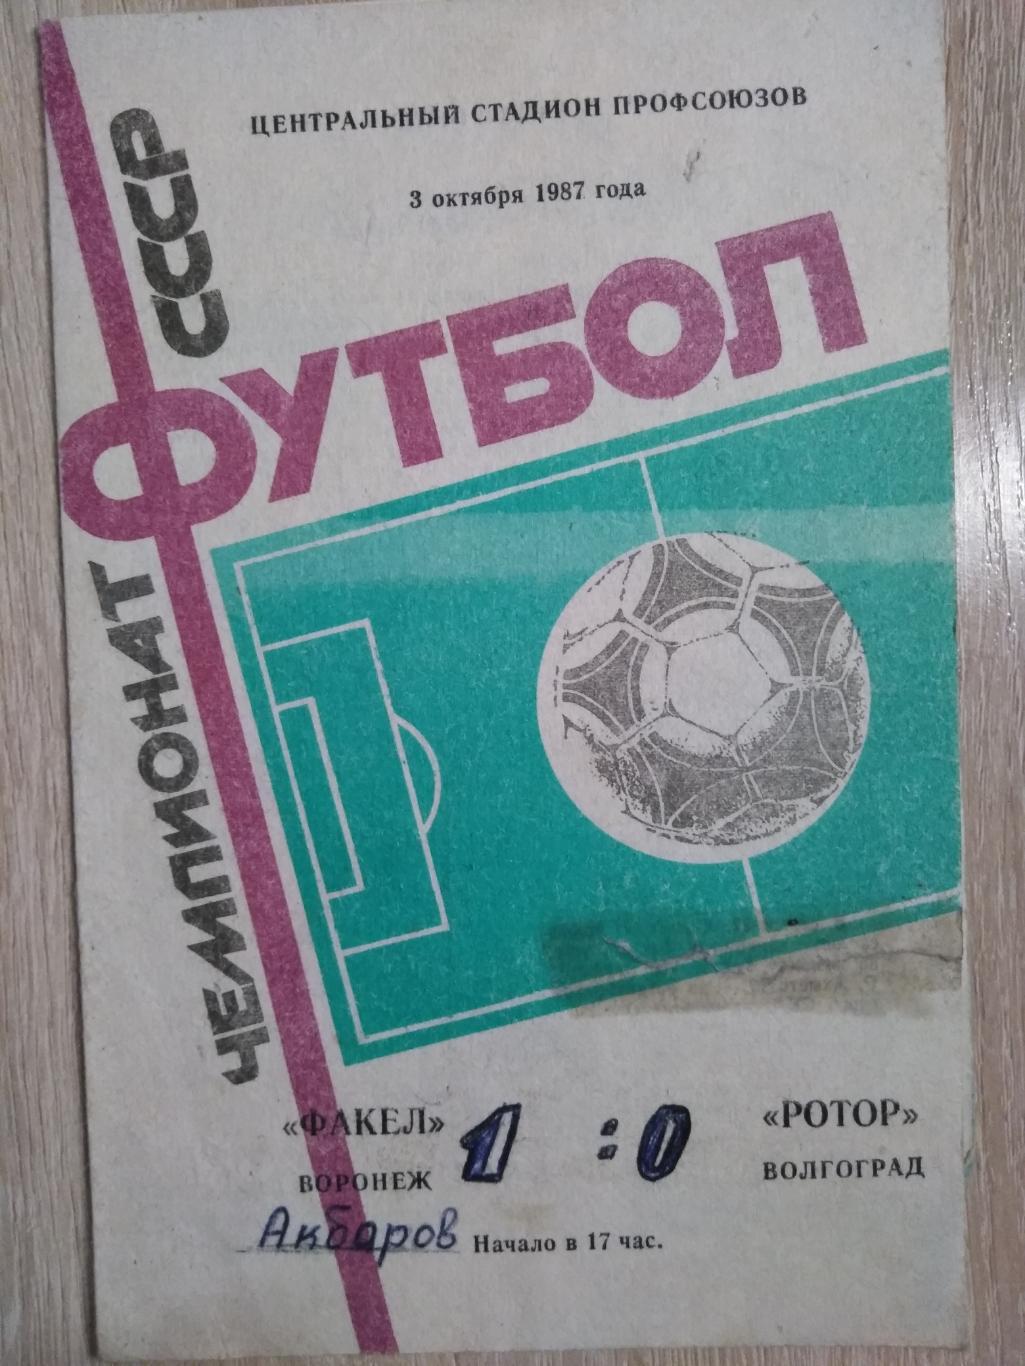 Факел Воронеж - Ротор Волгоград. 3.10.1987г.